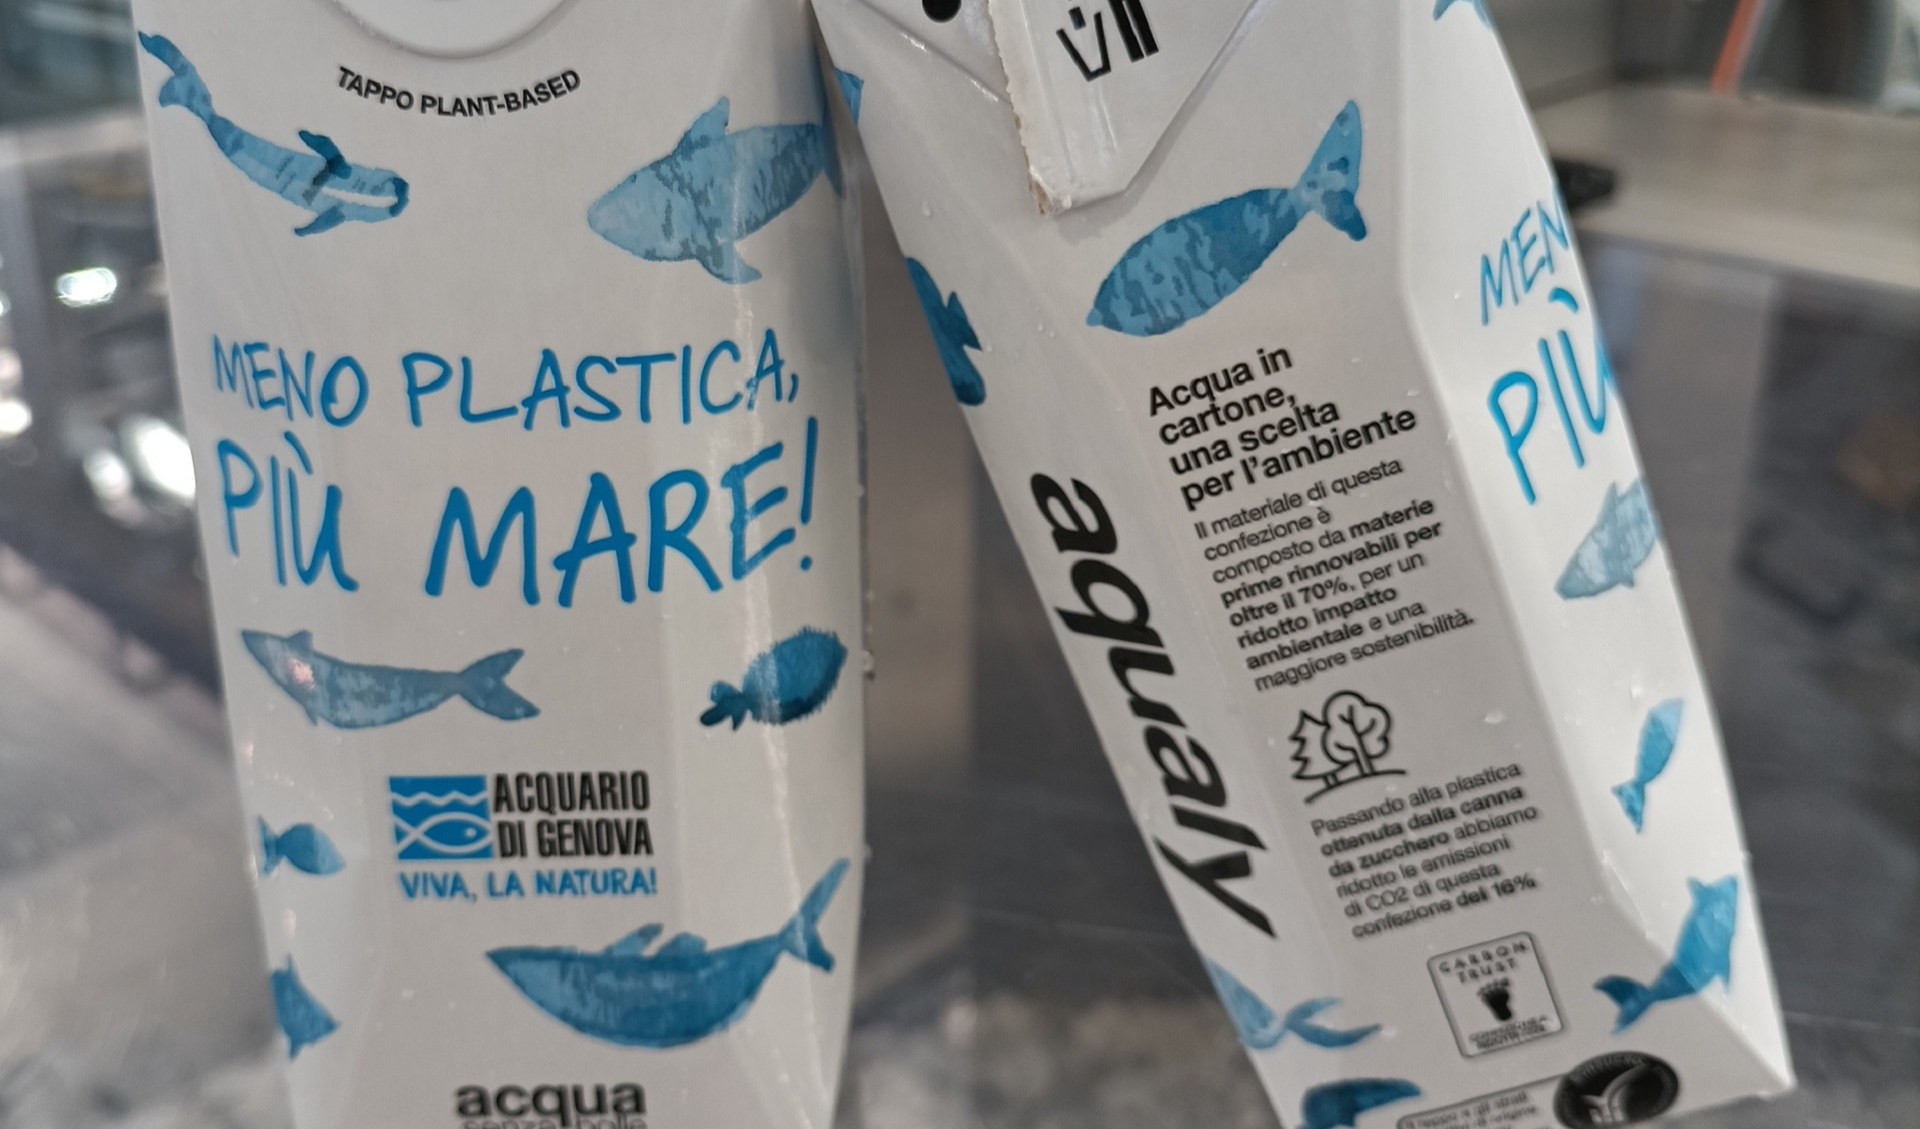 Acquario di Genova, stop alla plastica monouso